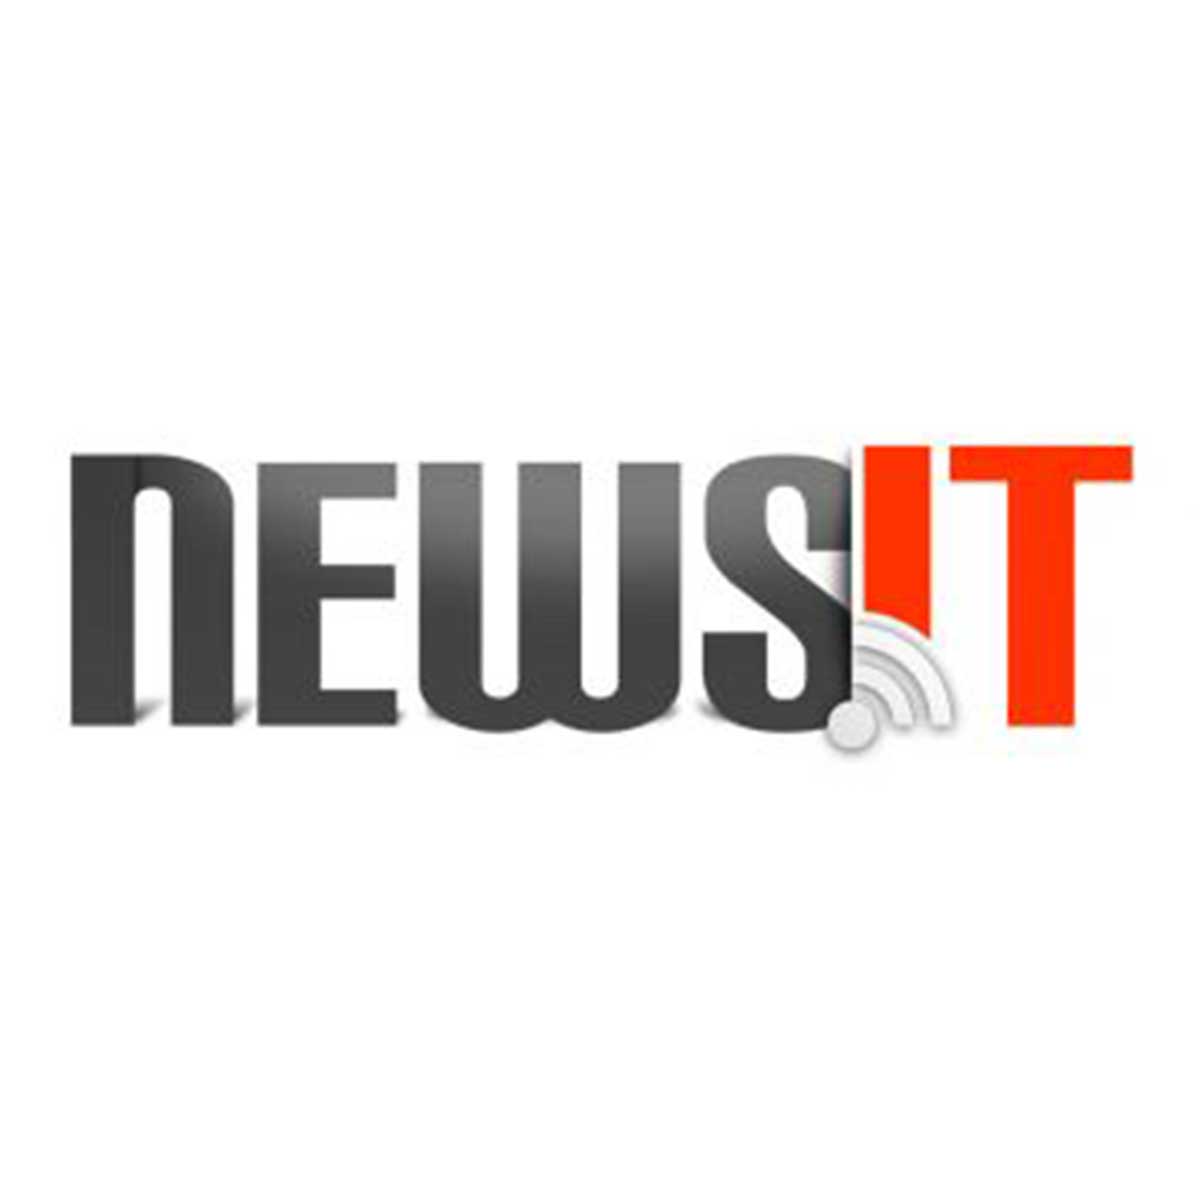 Το newsit.gr συμμετέχει στην 24ωρη απεργία